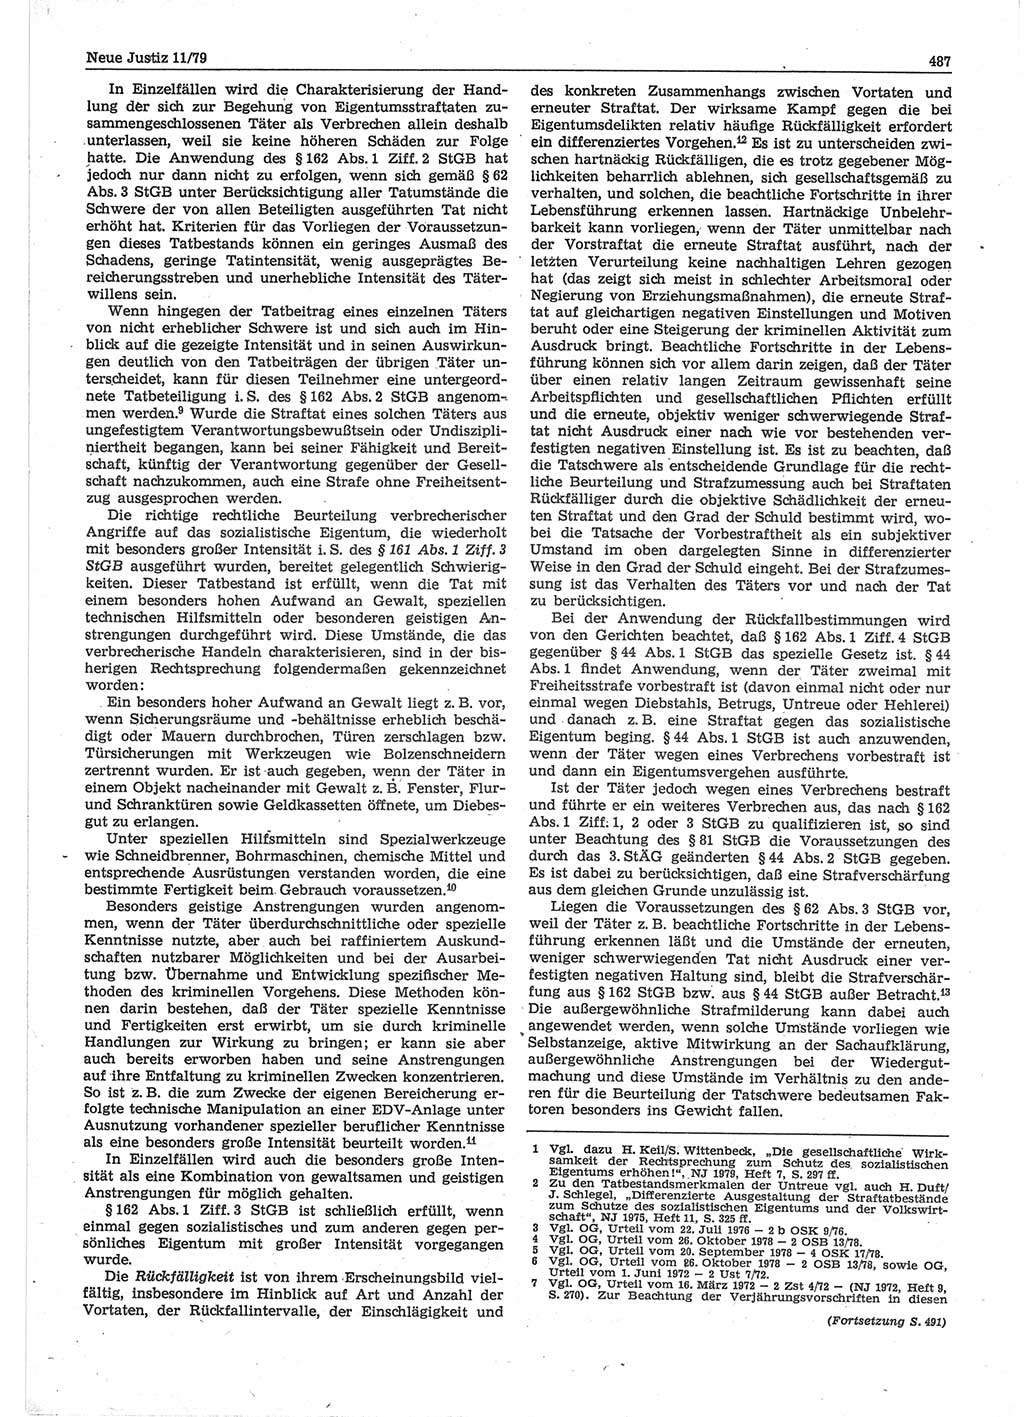 Neue Justiz (NJ), Zeitschrift für sozialistisches Recht und Gesetzlichkeit [Deutsche Demokratische Republik (DDR)], 33. Jahrgang 1979, Seite 487 (NJ DDR 1979, S. 487)